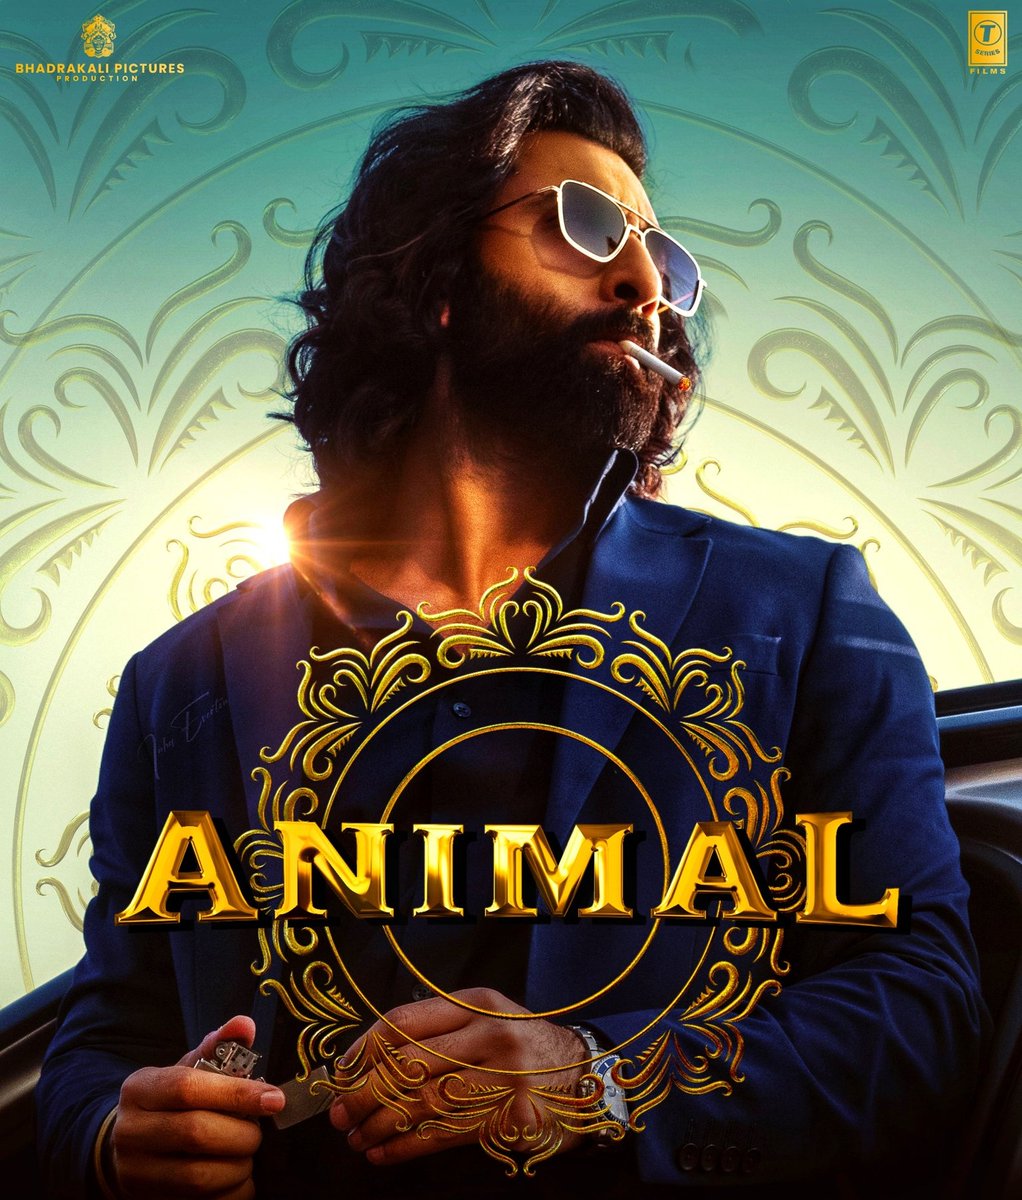 Ye 'Animal' Kya hi ghatiya, wahiyat movie hai isme kisi bhi cheez ka koi sense nahi hai sab kuchh zabardasti ka ghusaya gaya hai 😏😠🤢
total worthless and time waste . 👎😔
#AnimalMovie